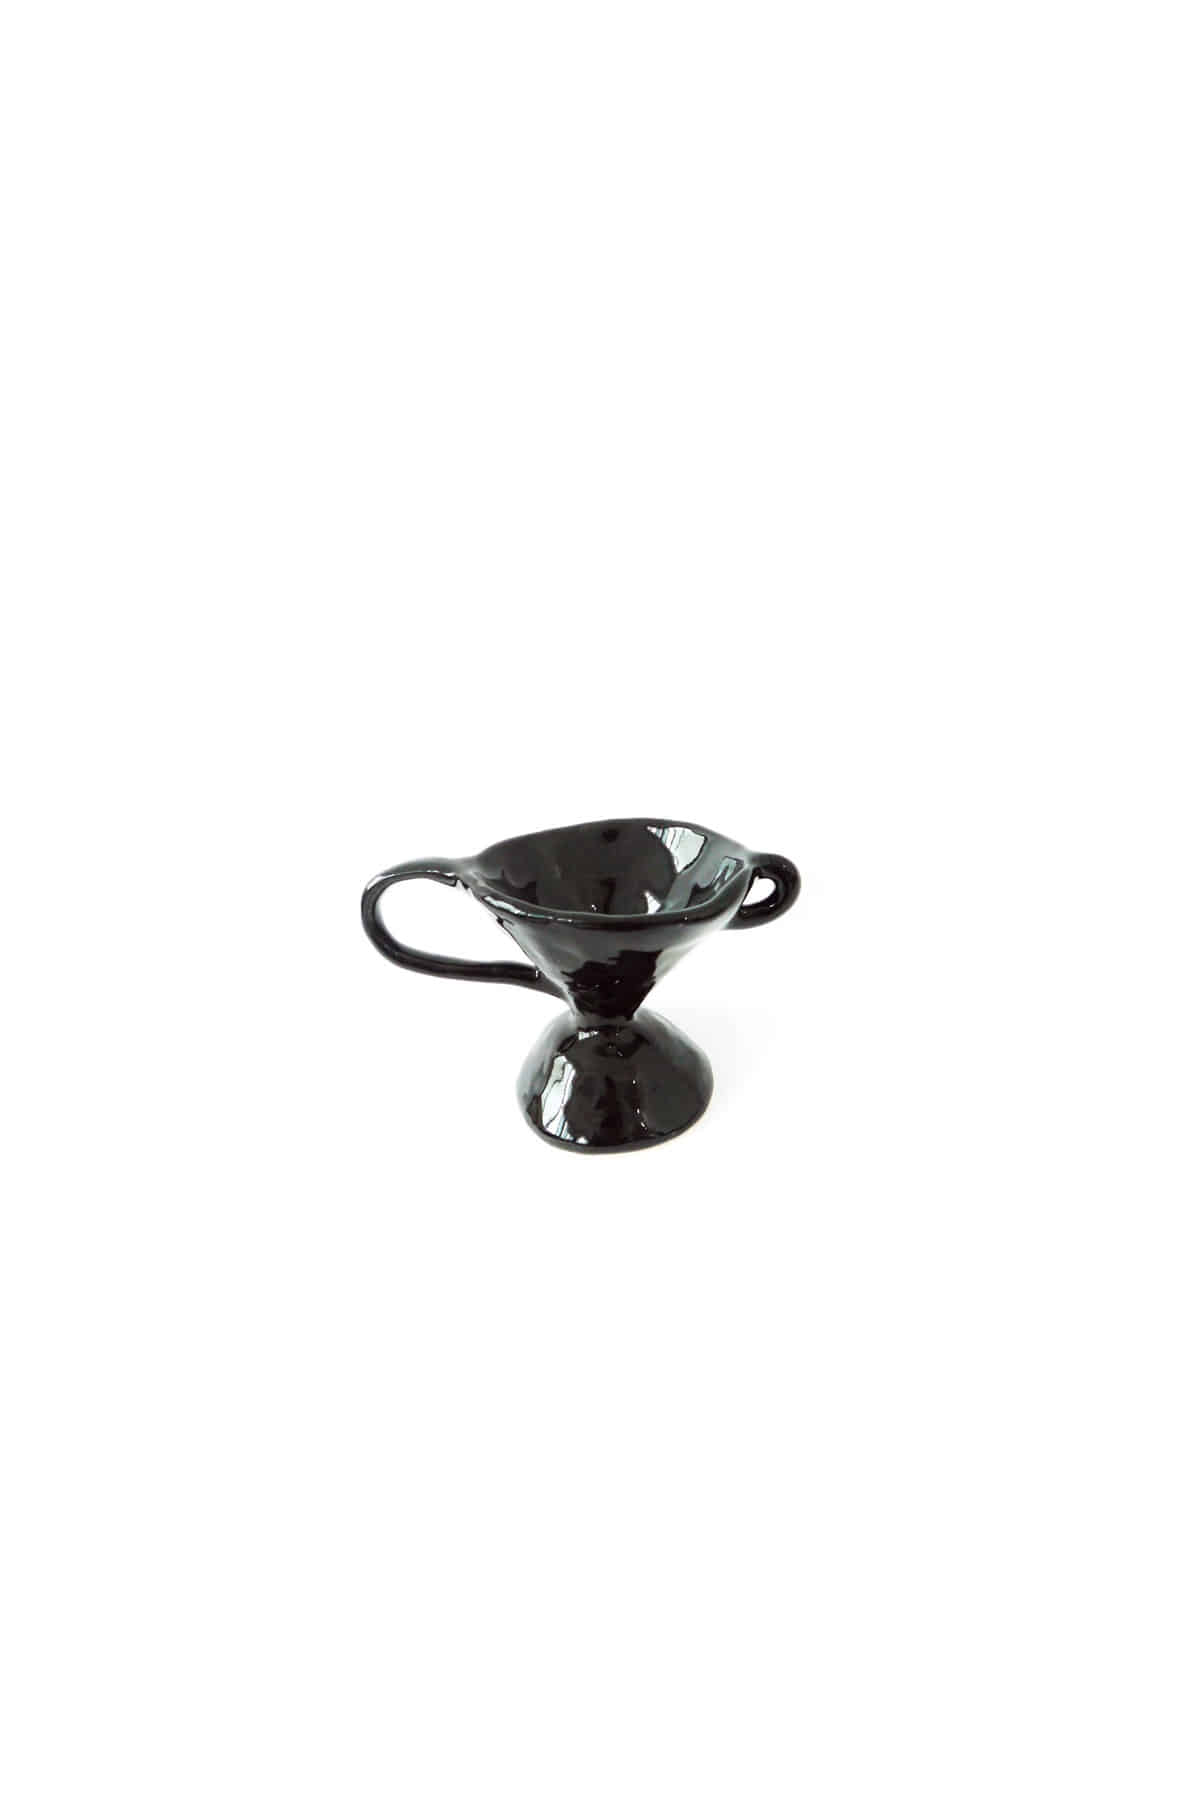 [Ceramic] Sand Hour Vase